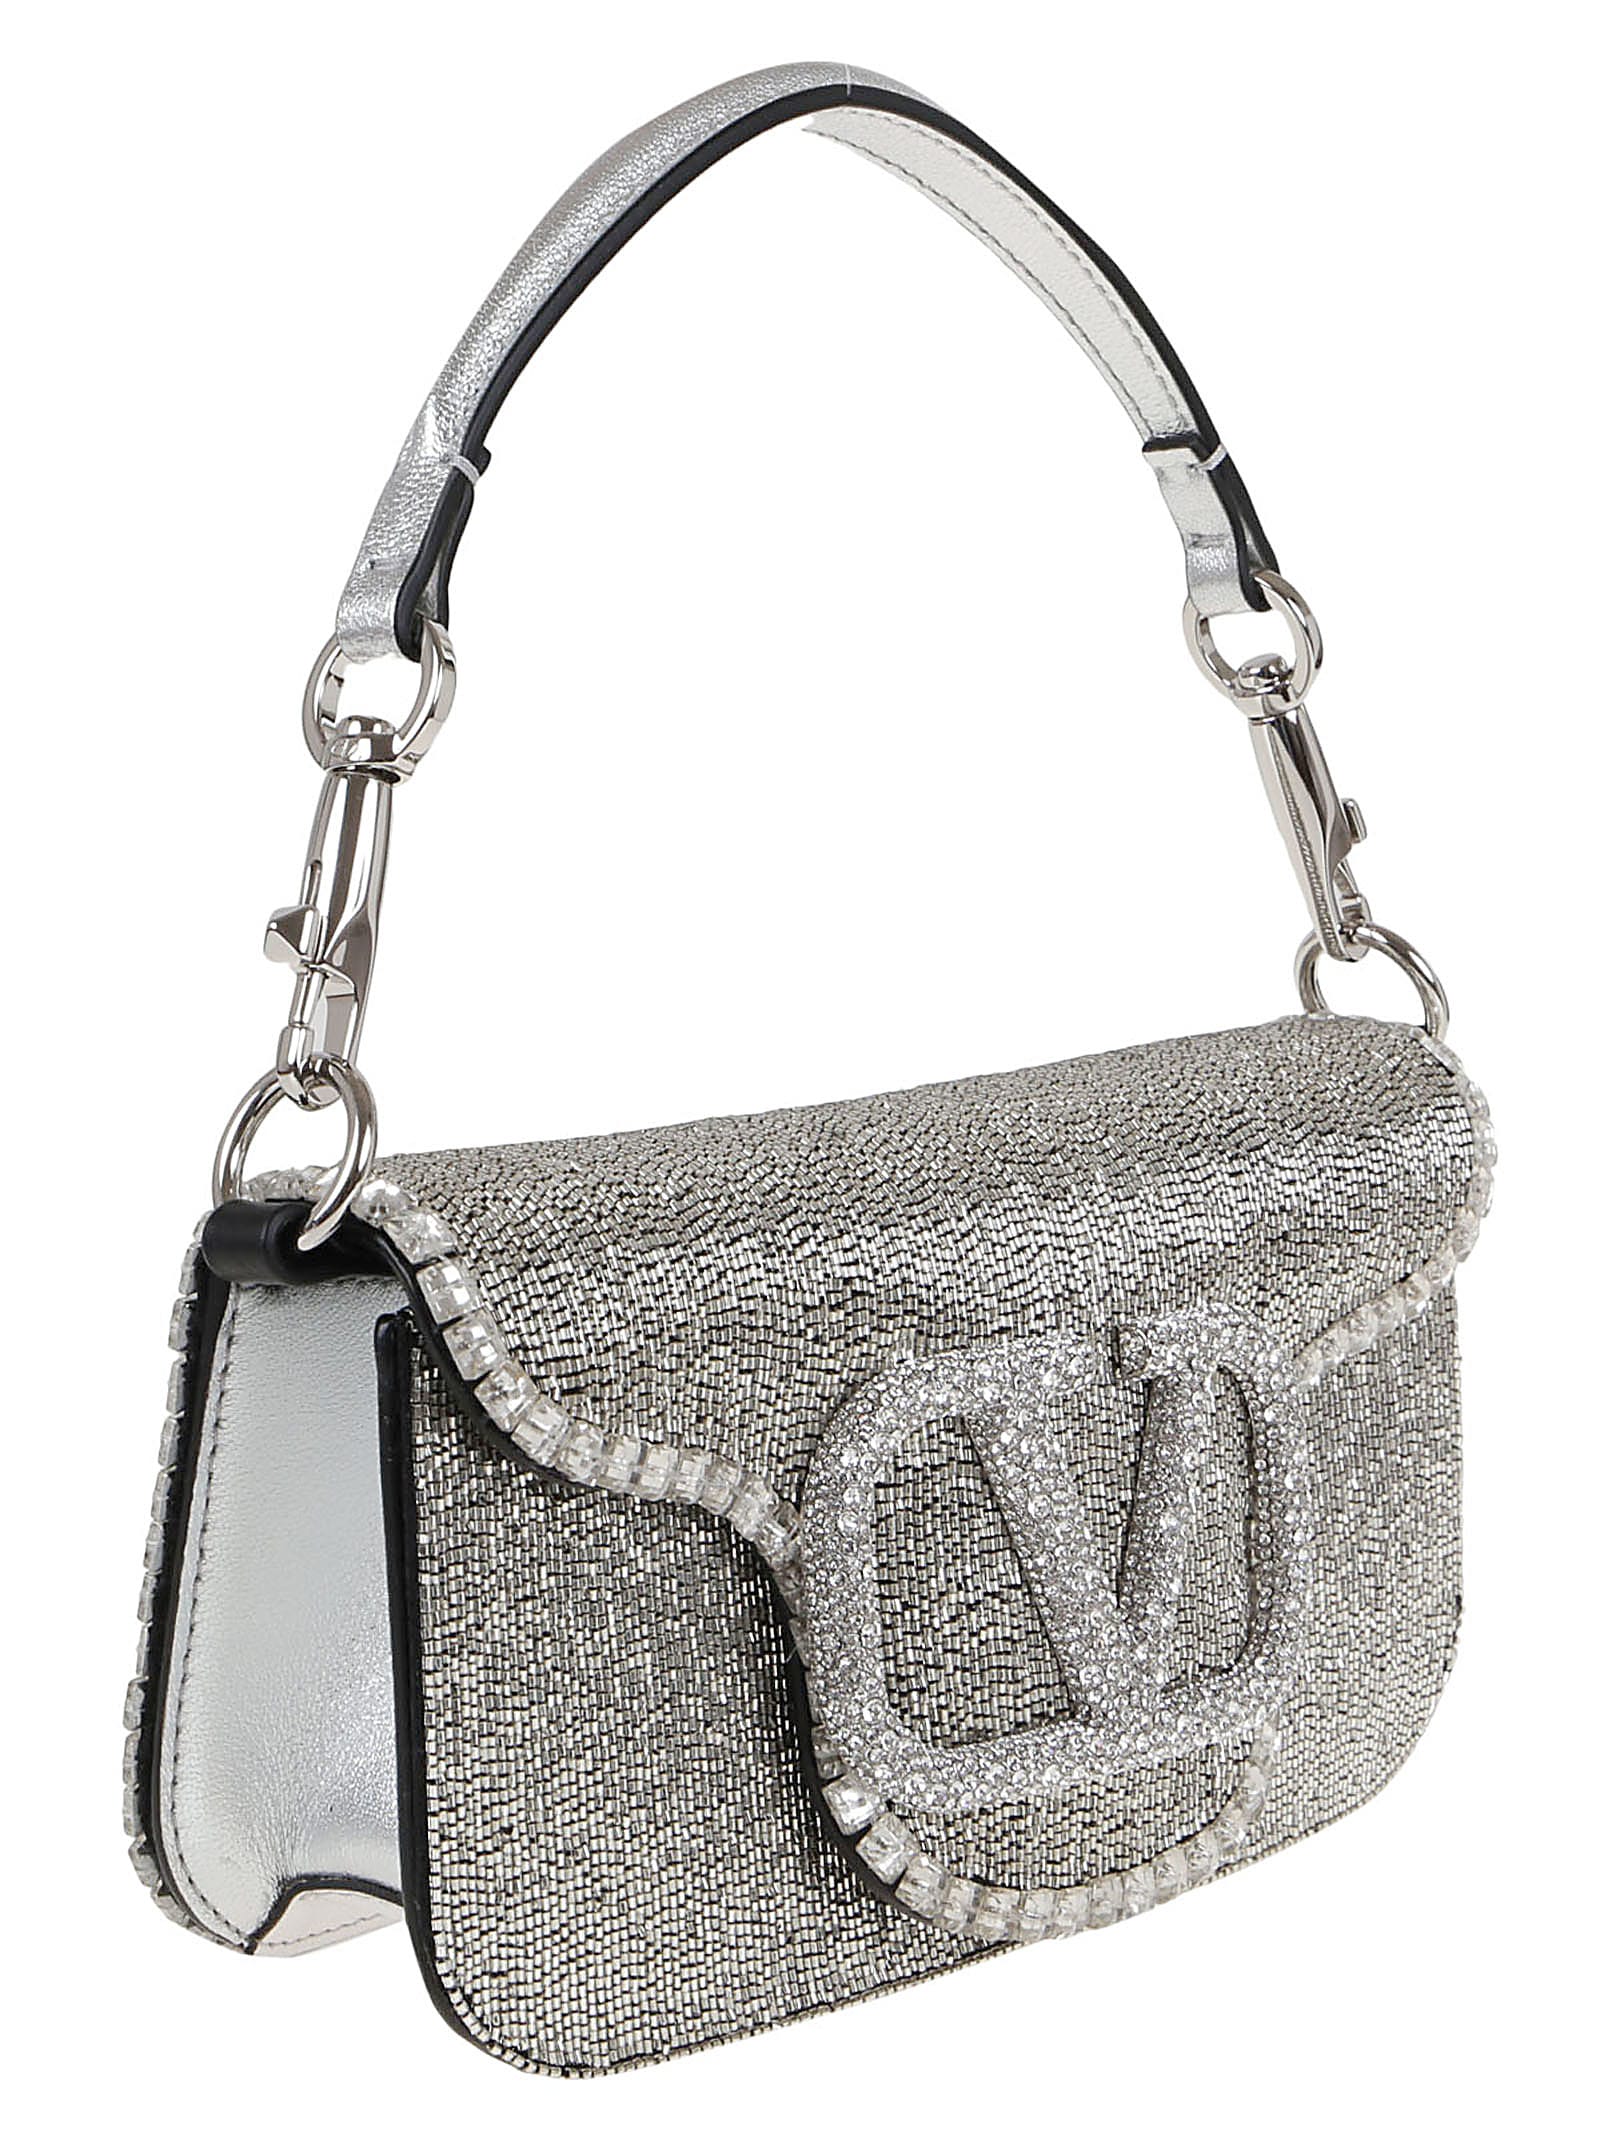 Valentino Garavani: Silver Small Locò Bag